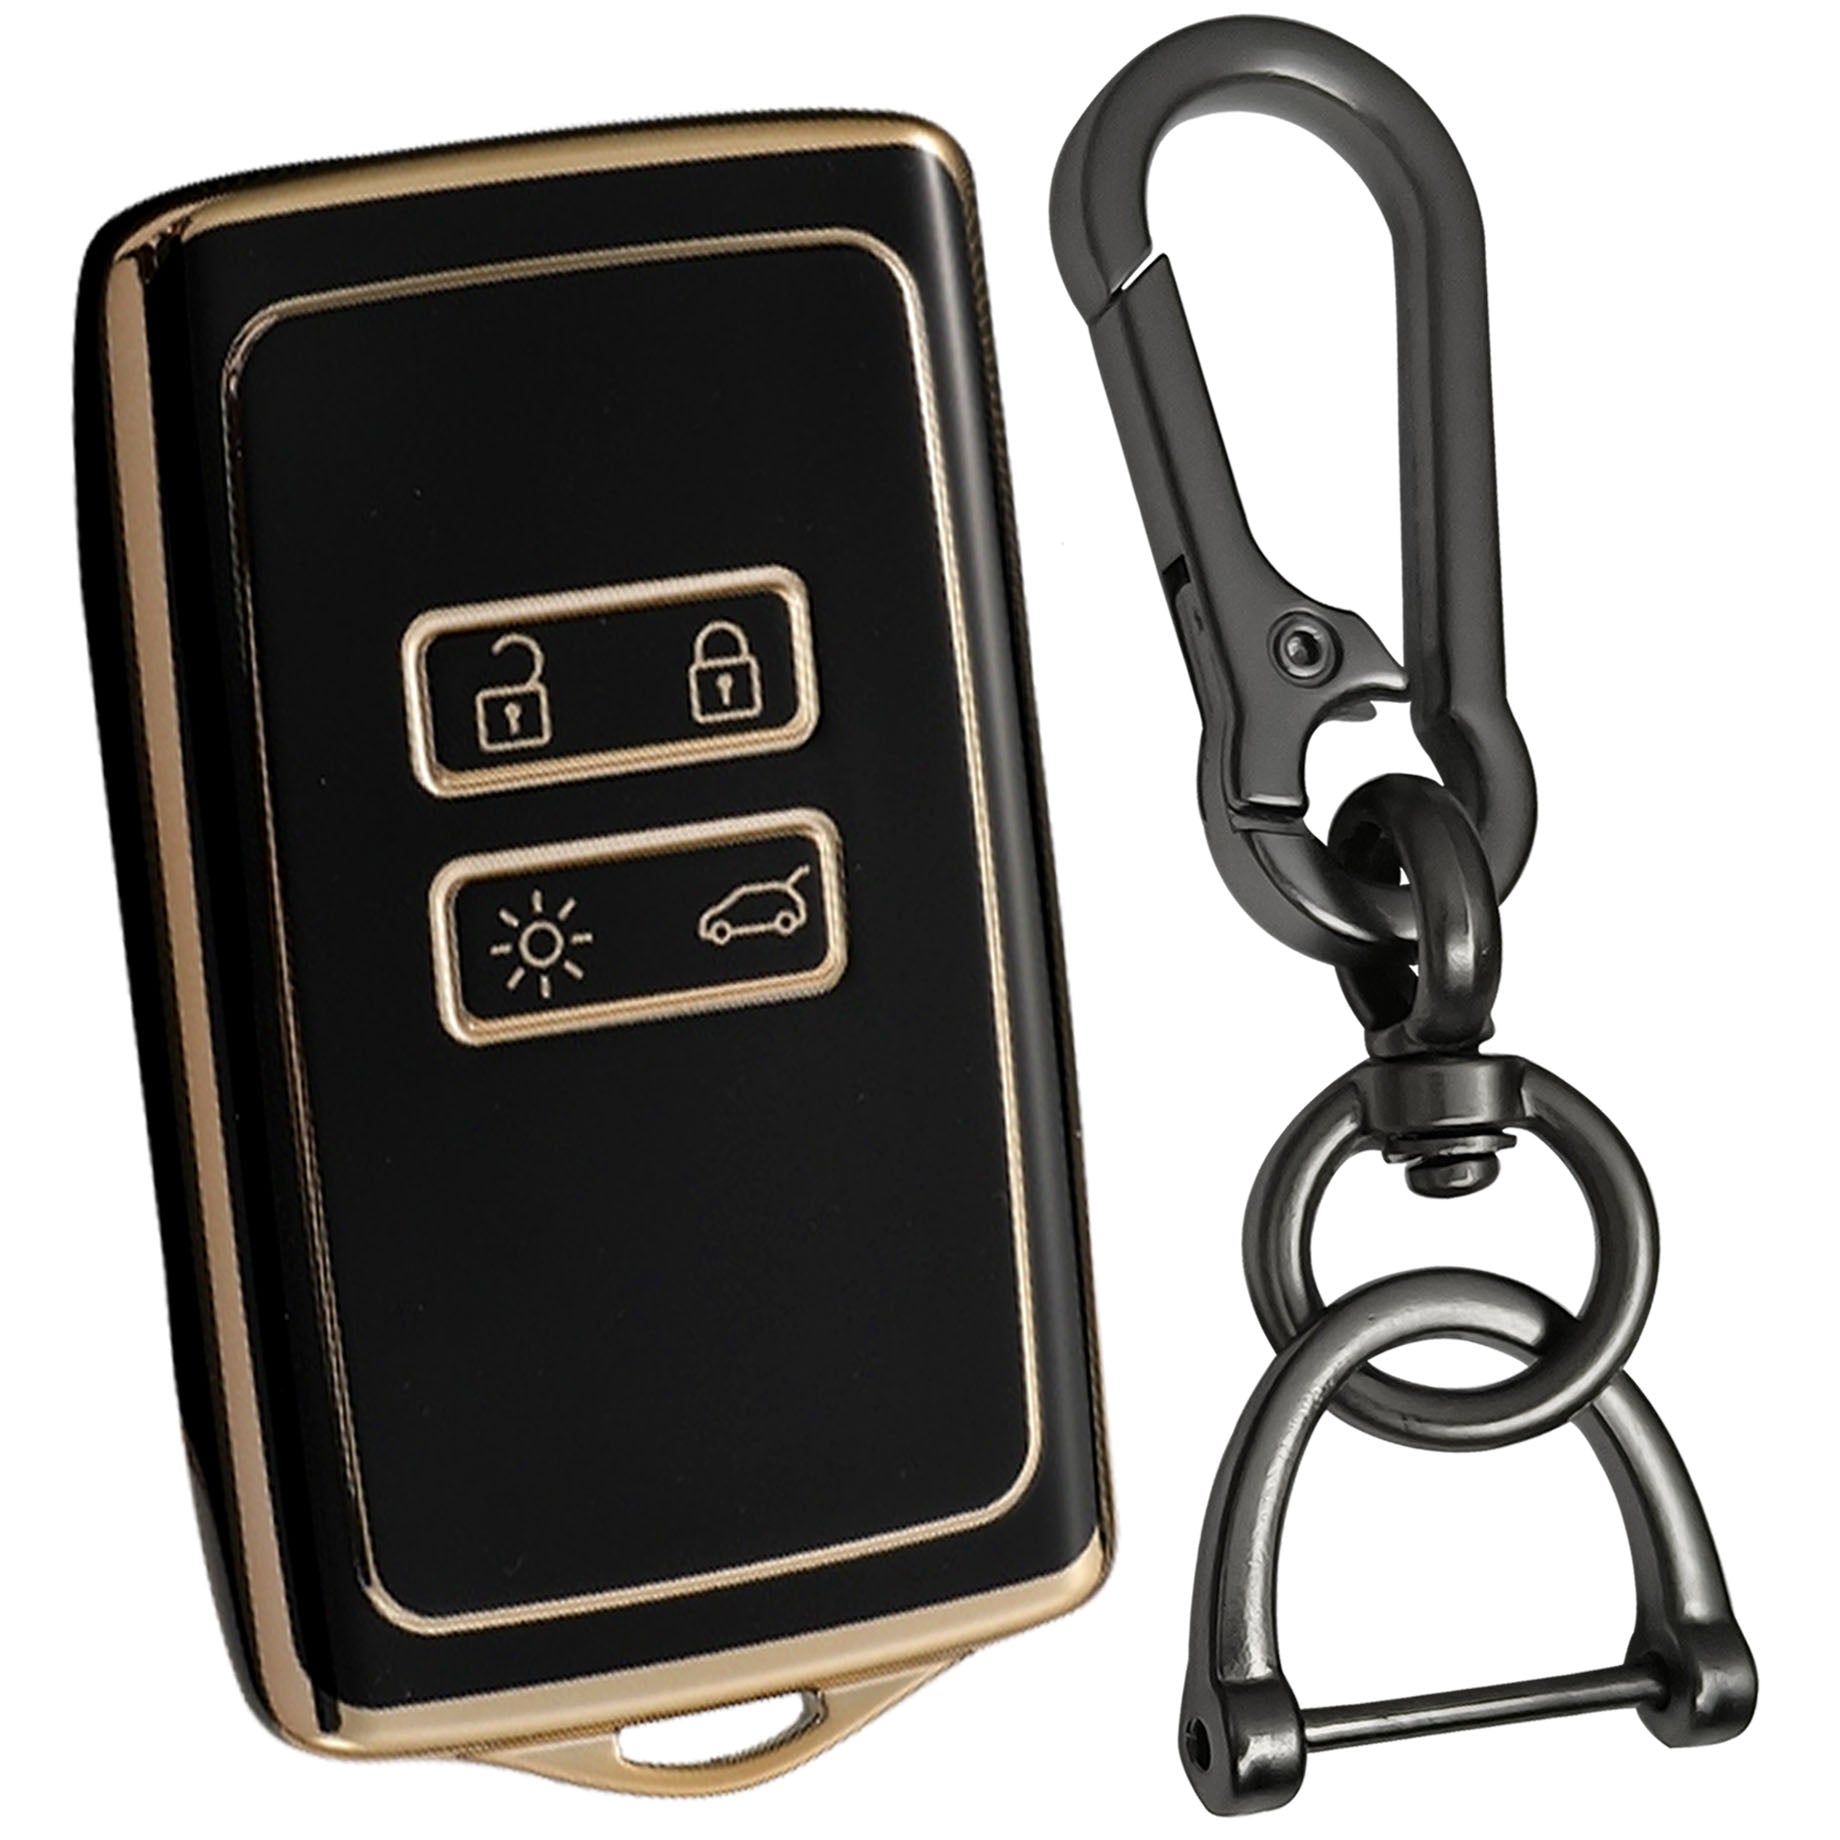 renault triber kiger 4b smart tpu black key cover case keychain